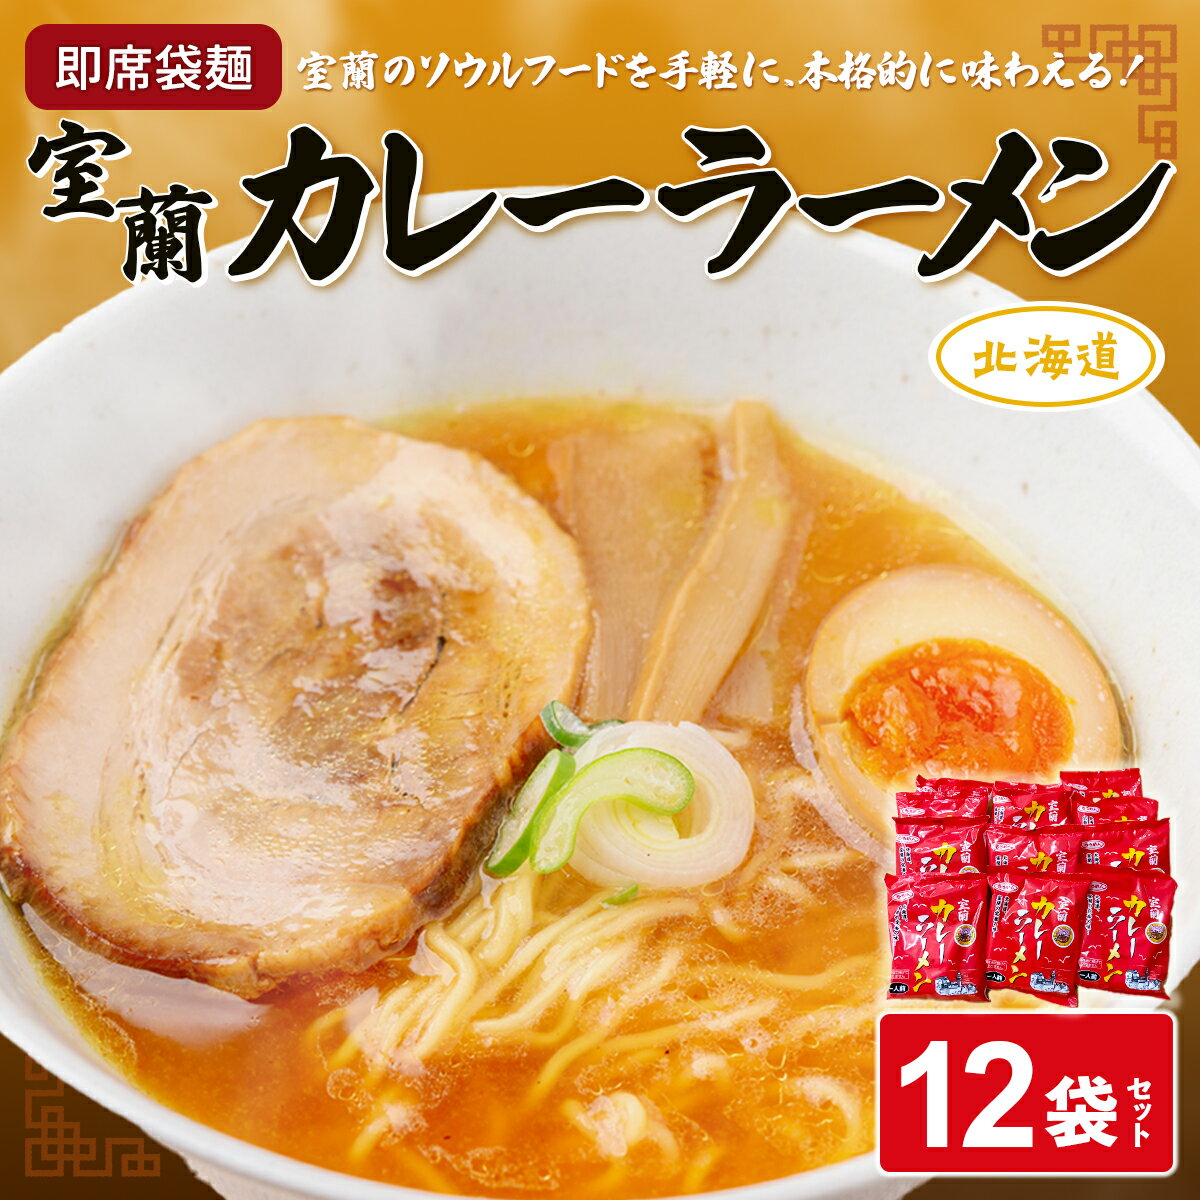 【ふるさと納税】即席袋麺「室蘭カレーラーメン」12袋